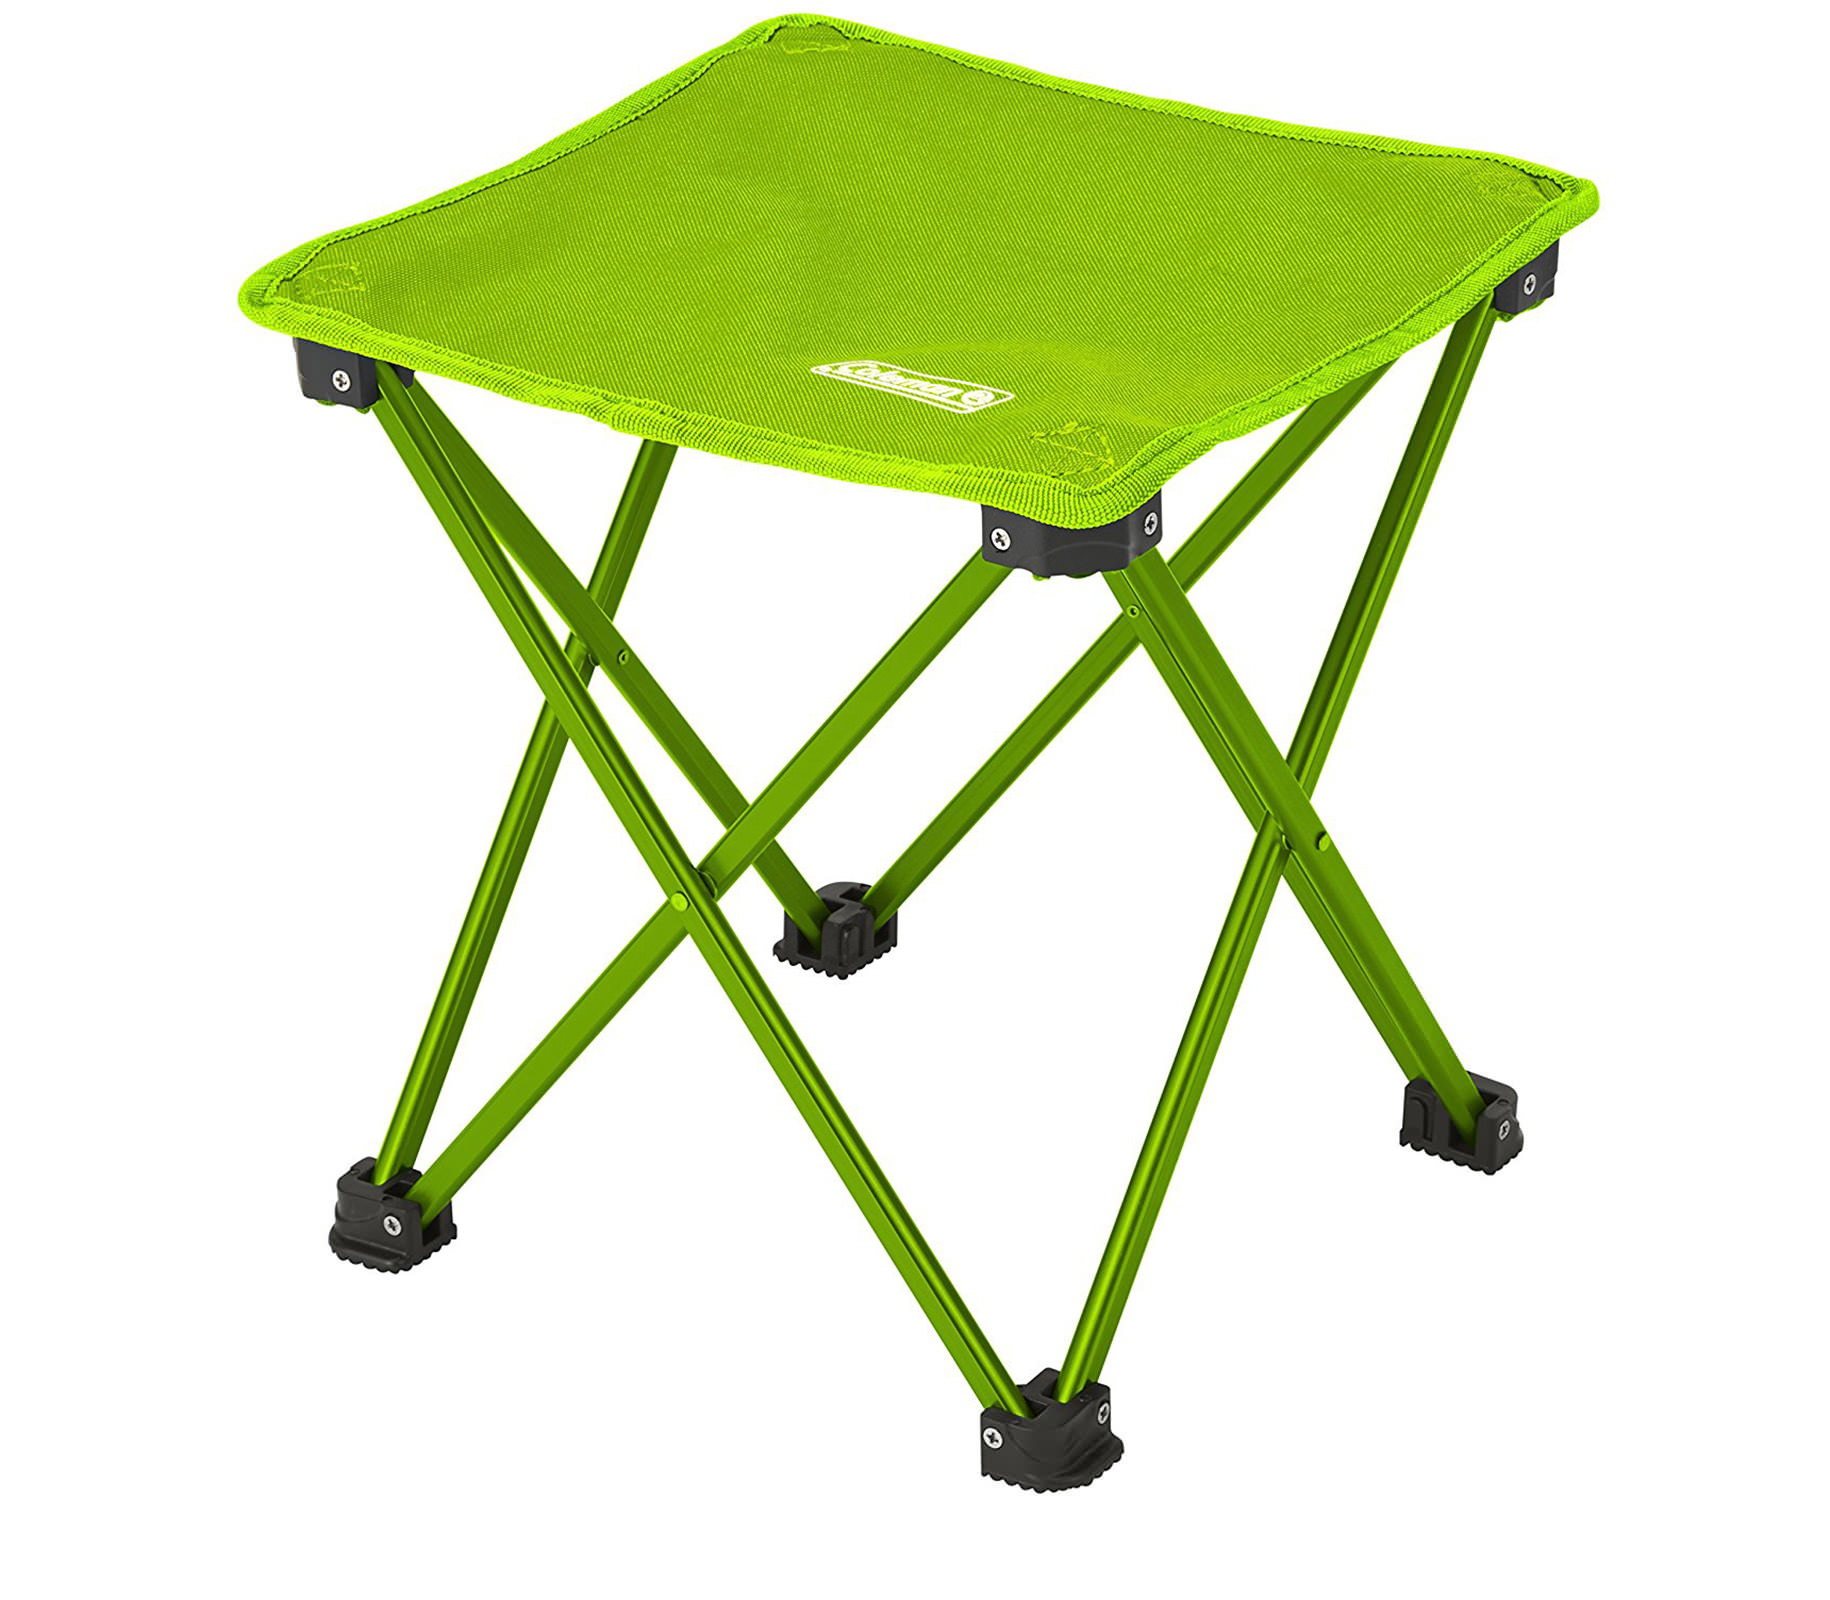 ghe-dau-coleman-compact-trekking-stool-lime-green-2000021984-7593-wetrek_vn